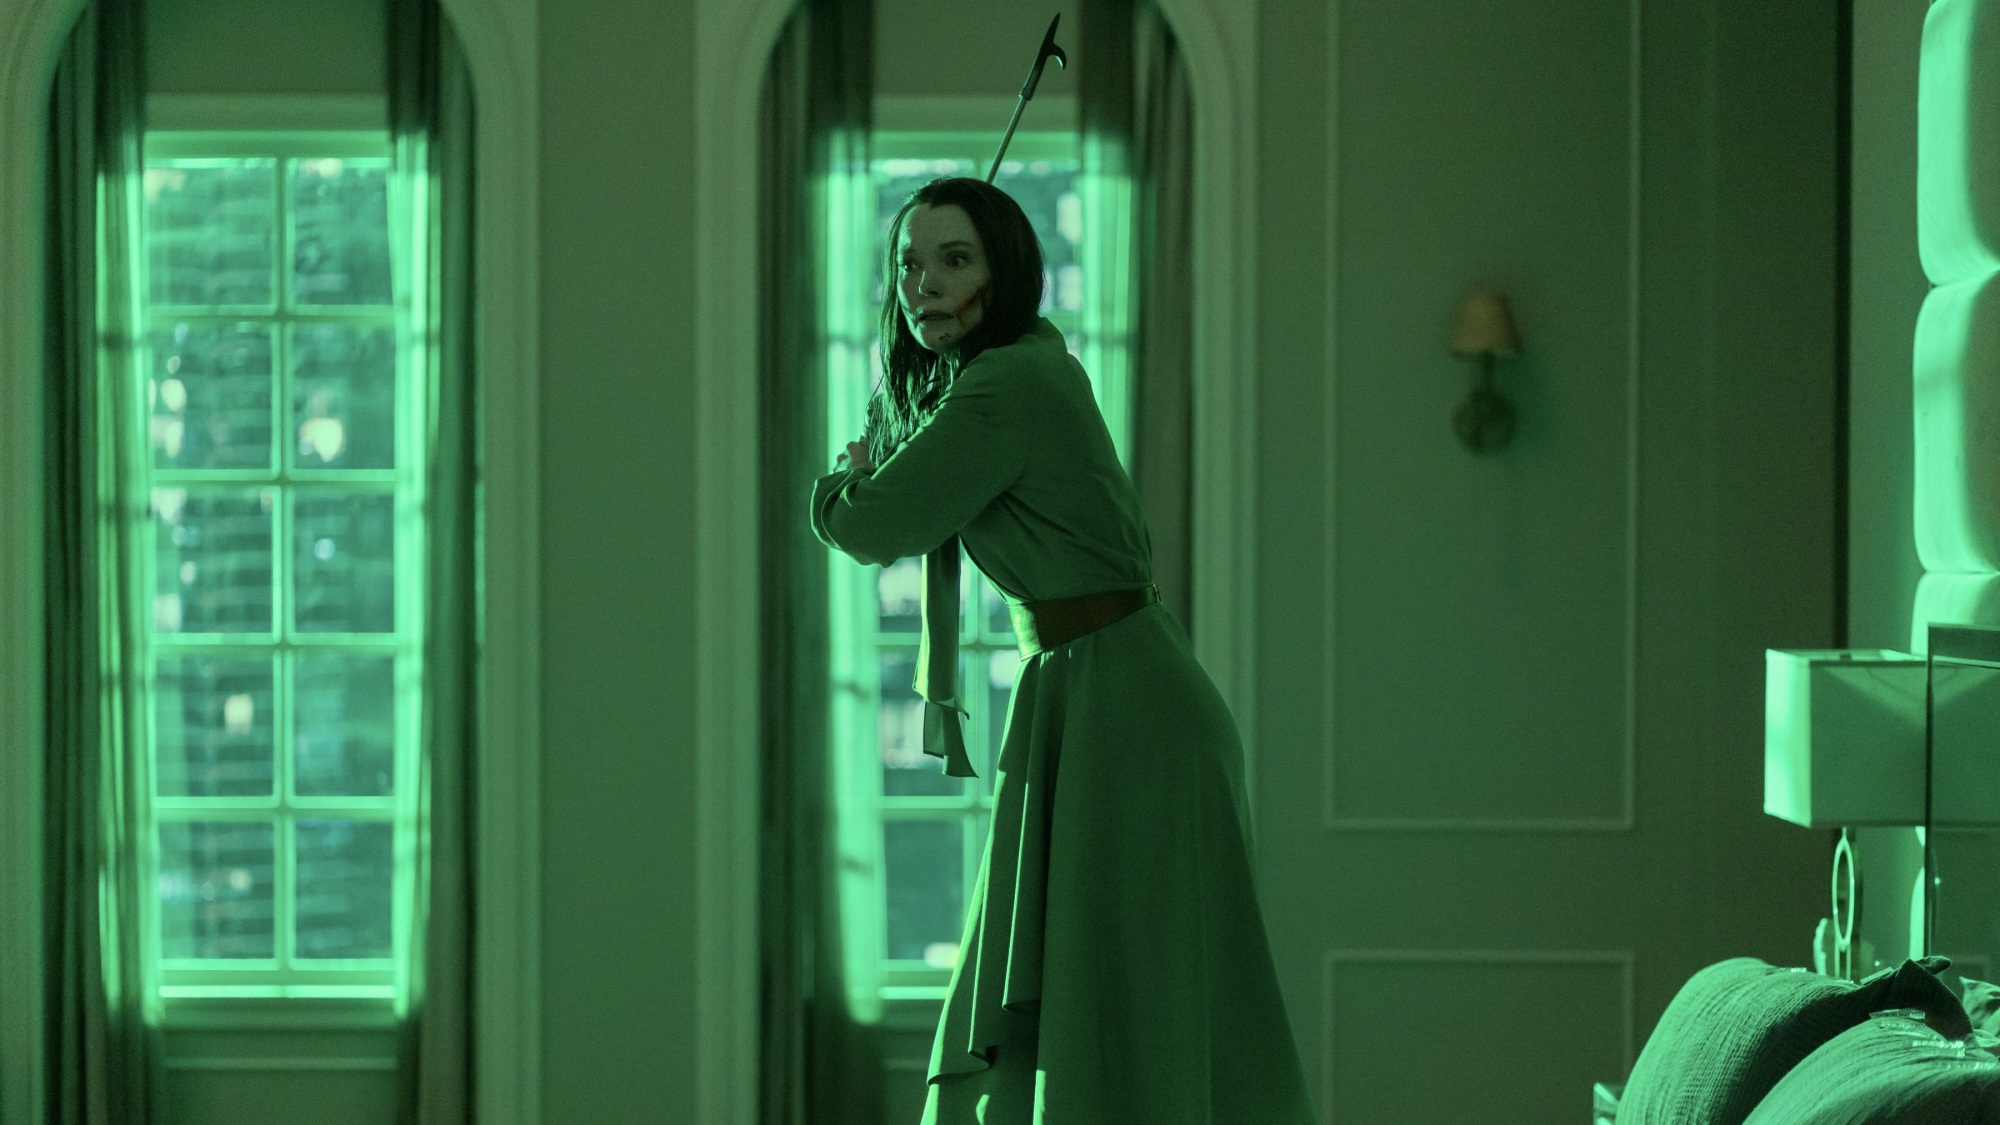 Une femme vêtue d’une robe verte se tient sur un lit dans une pièce éclairée en vert, tenant un tisonnier comme une arme.